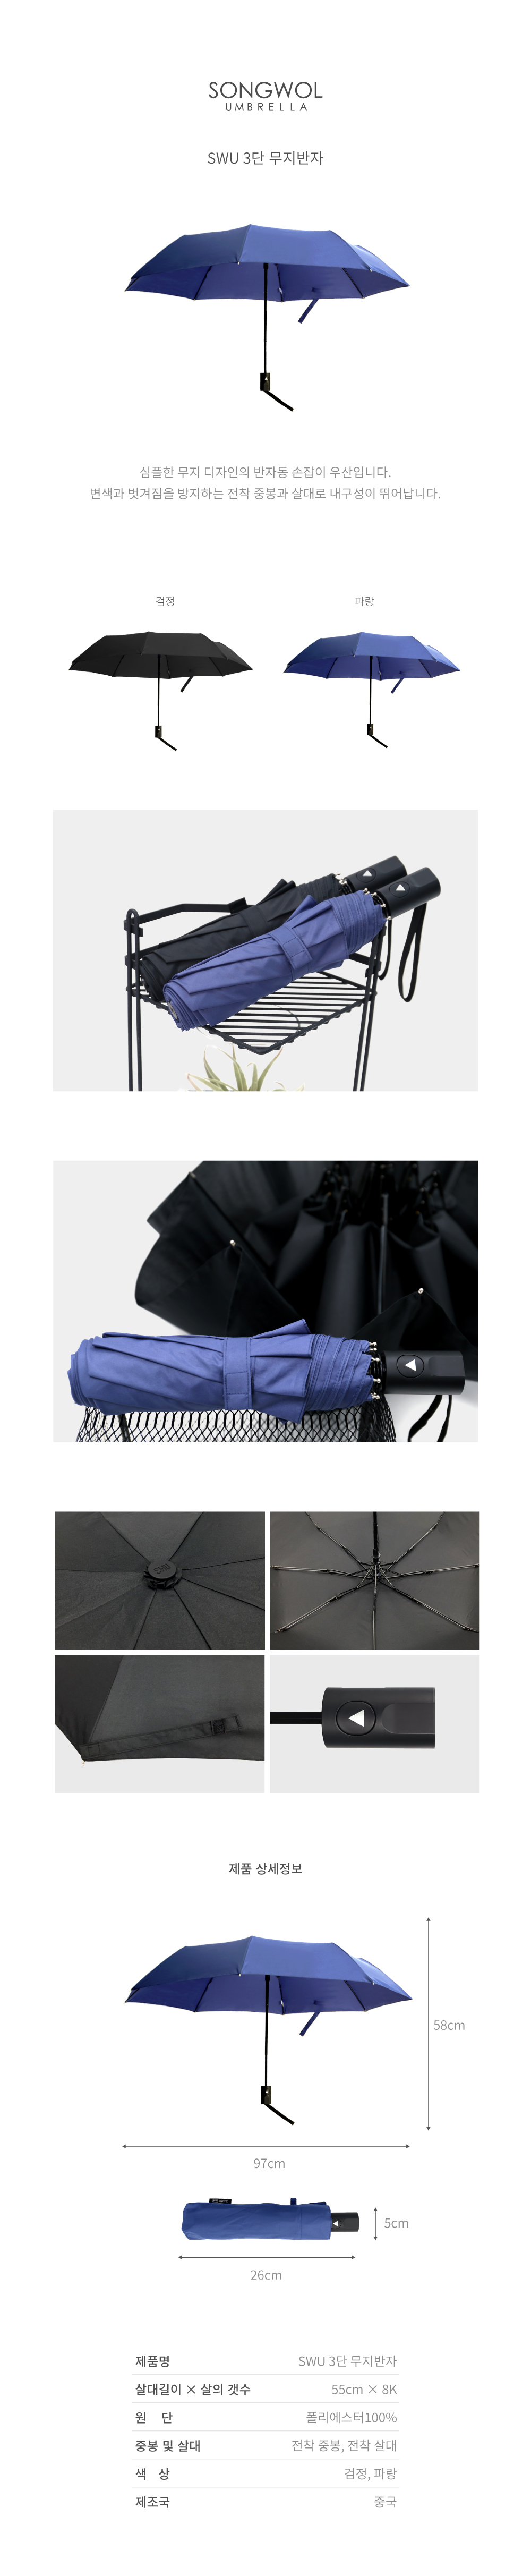 심플한 무지 디자인의 반자동 손잡이 우산입니다. 변색과 벗겨짐을 방지하는 전착 중봉과 살대로 내구성이 뛰어납니다.